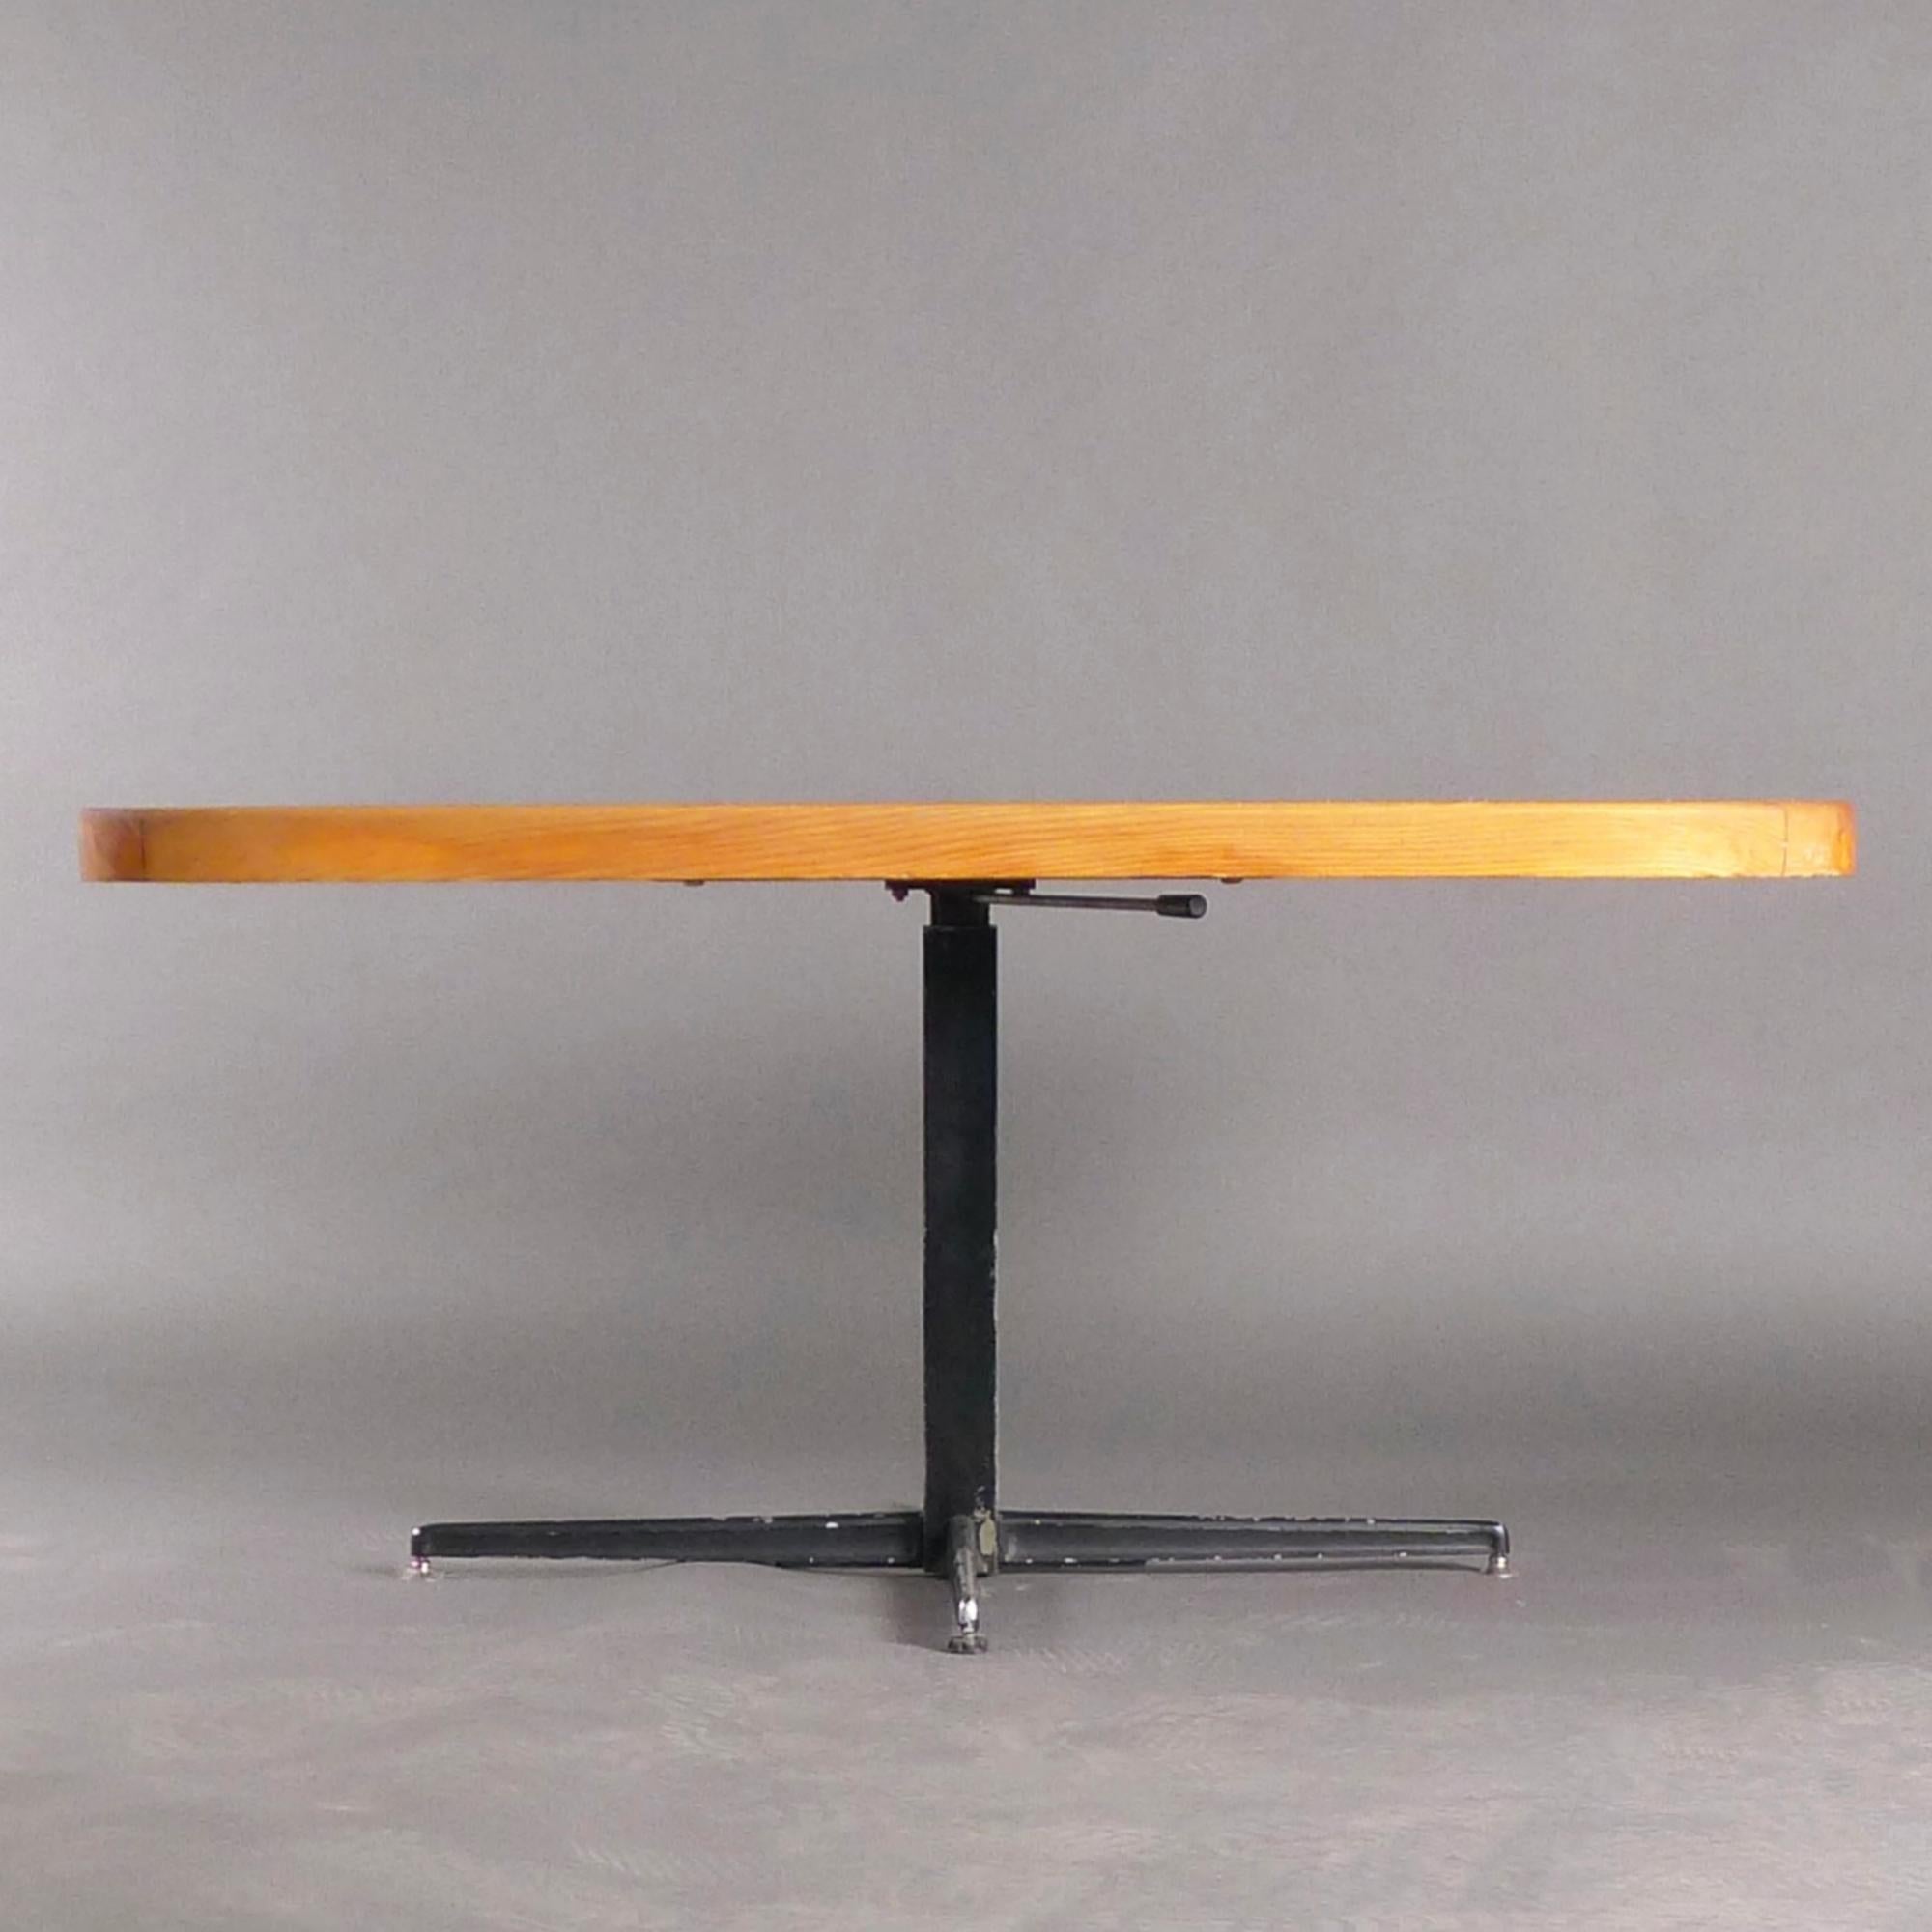 Rare table de salle à manger / table basse réglable, conçue par Charlotte Perriand pour être utilisée dans la série de stations de ski sur lesquelles elle a travaillé aux Arcs, en France, dans les années 1960-70.

Les angles arrondis du plateau en